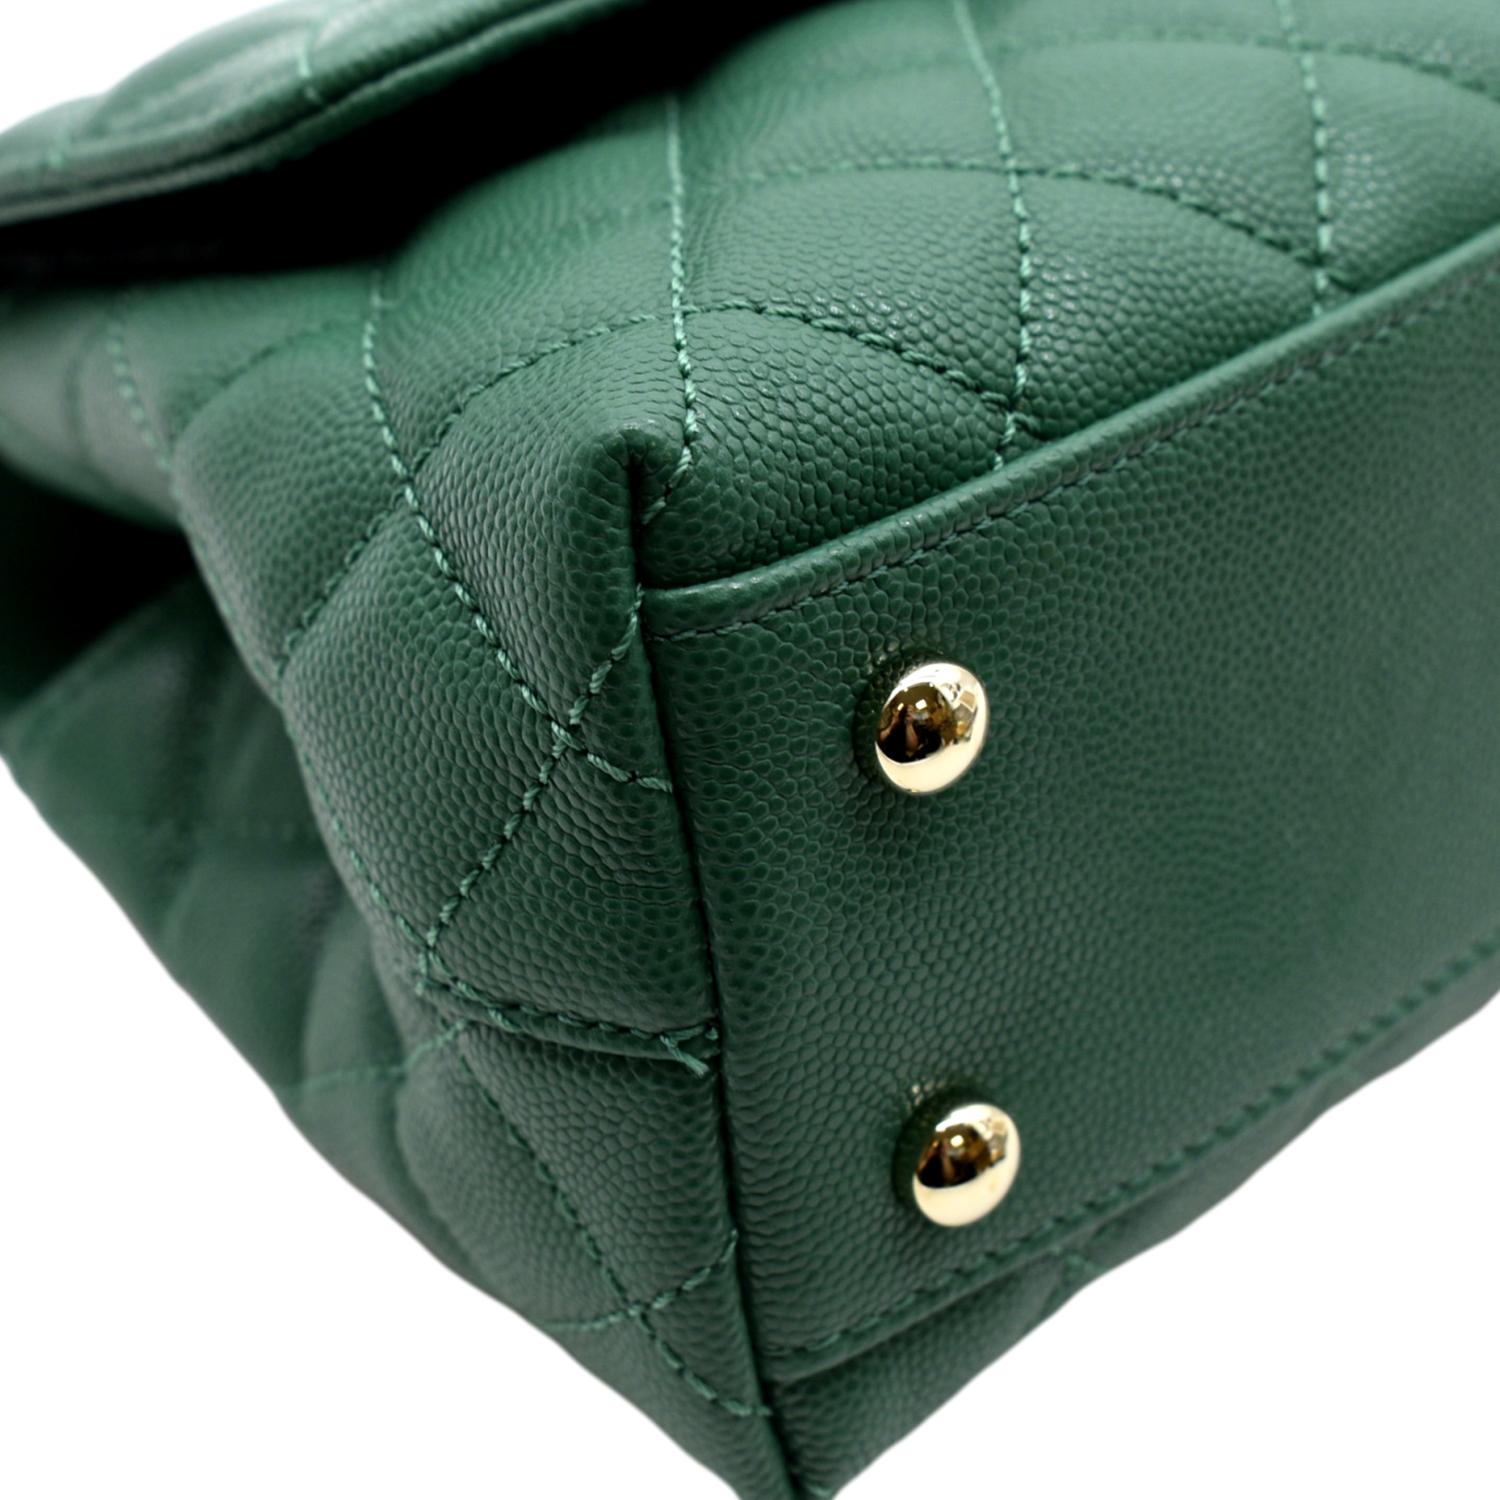 Chanel Emerald Mini Bag